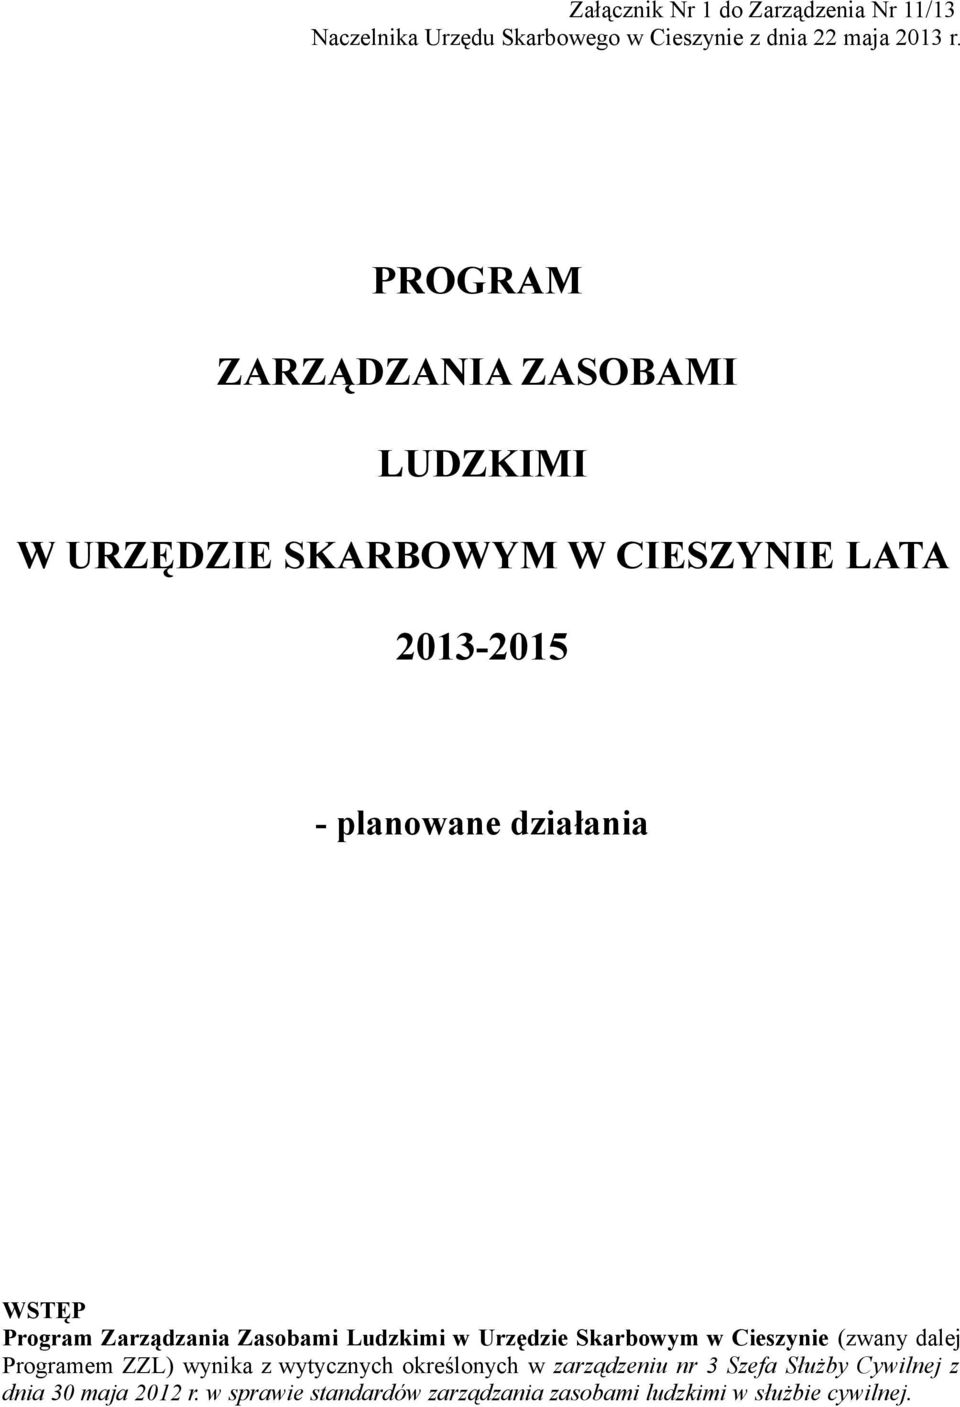 Program Zarządzania Zasobami Ludzkimi w Urzędzie Skarbowym w Cieszynie (zwany dalej Programem ZZL) wynika z wytycznych